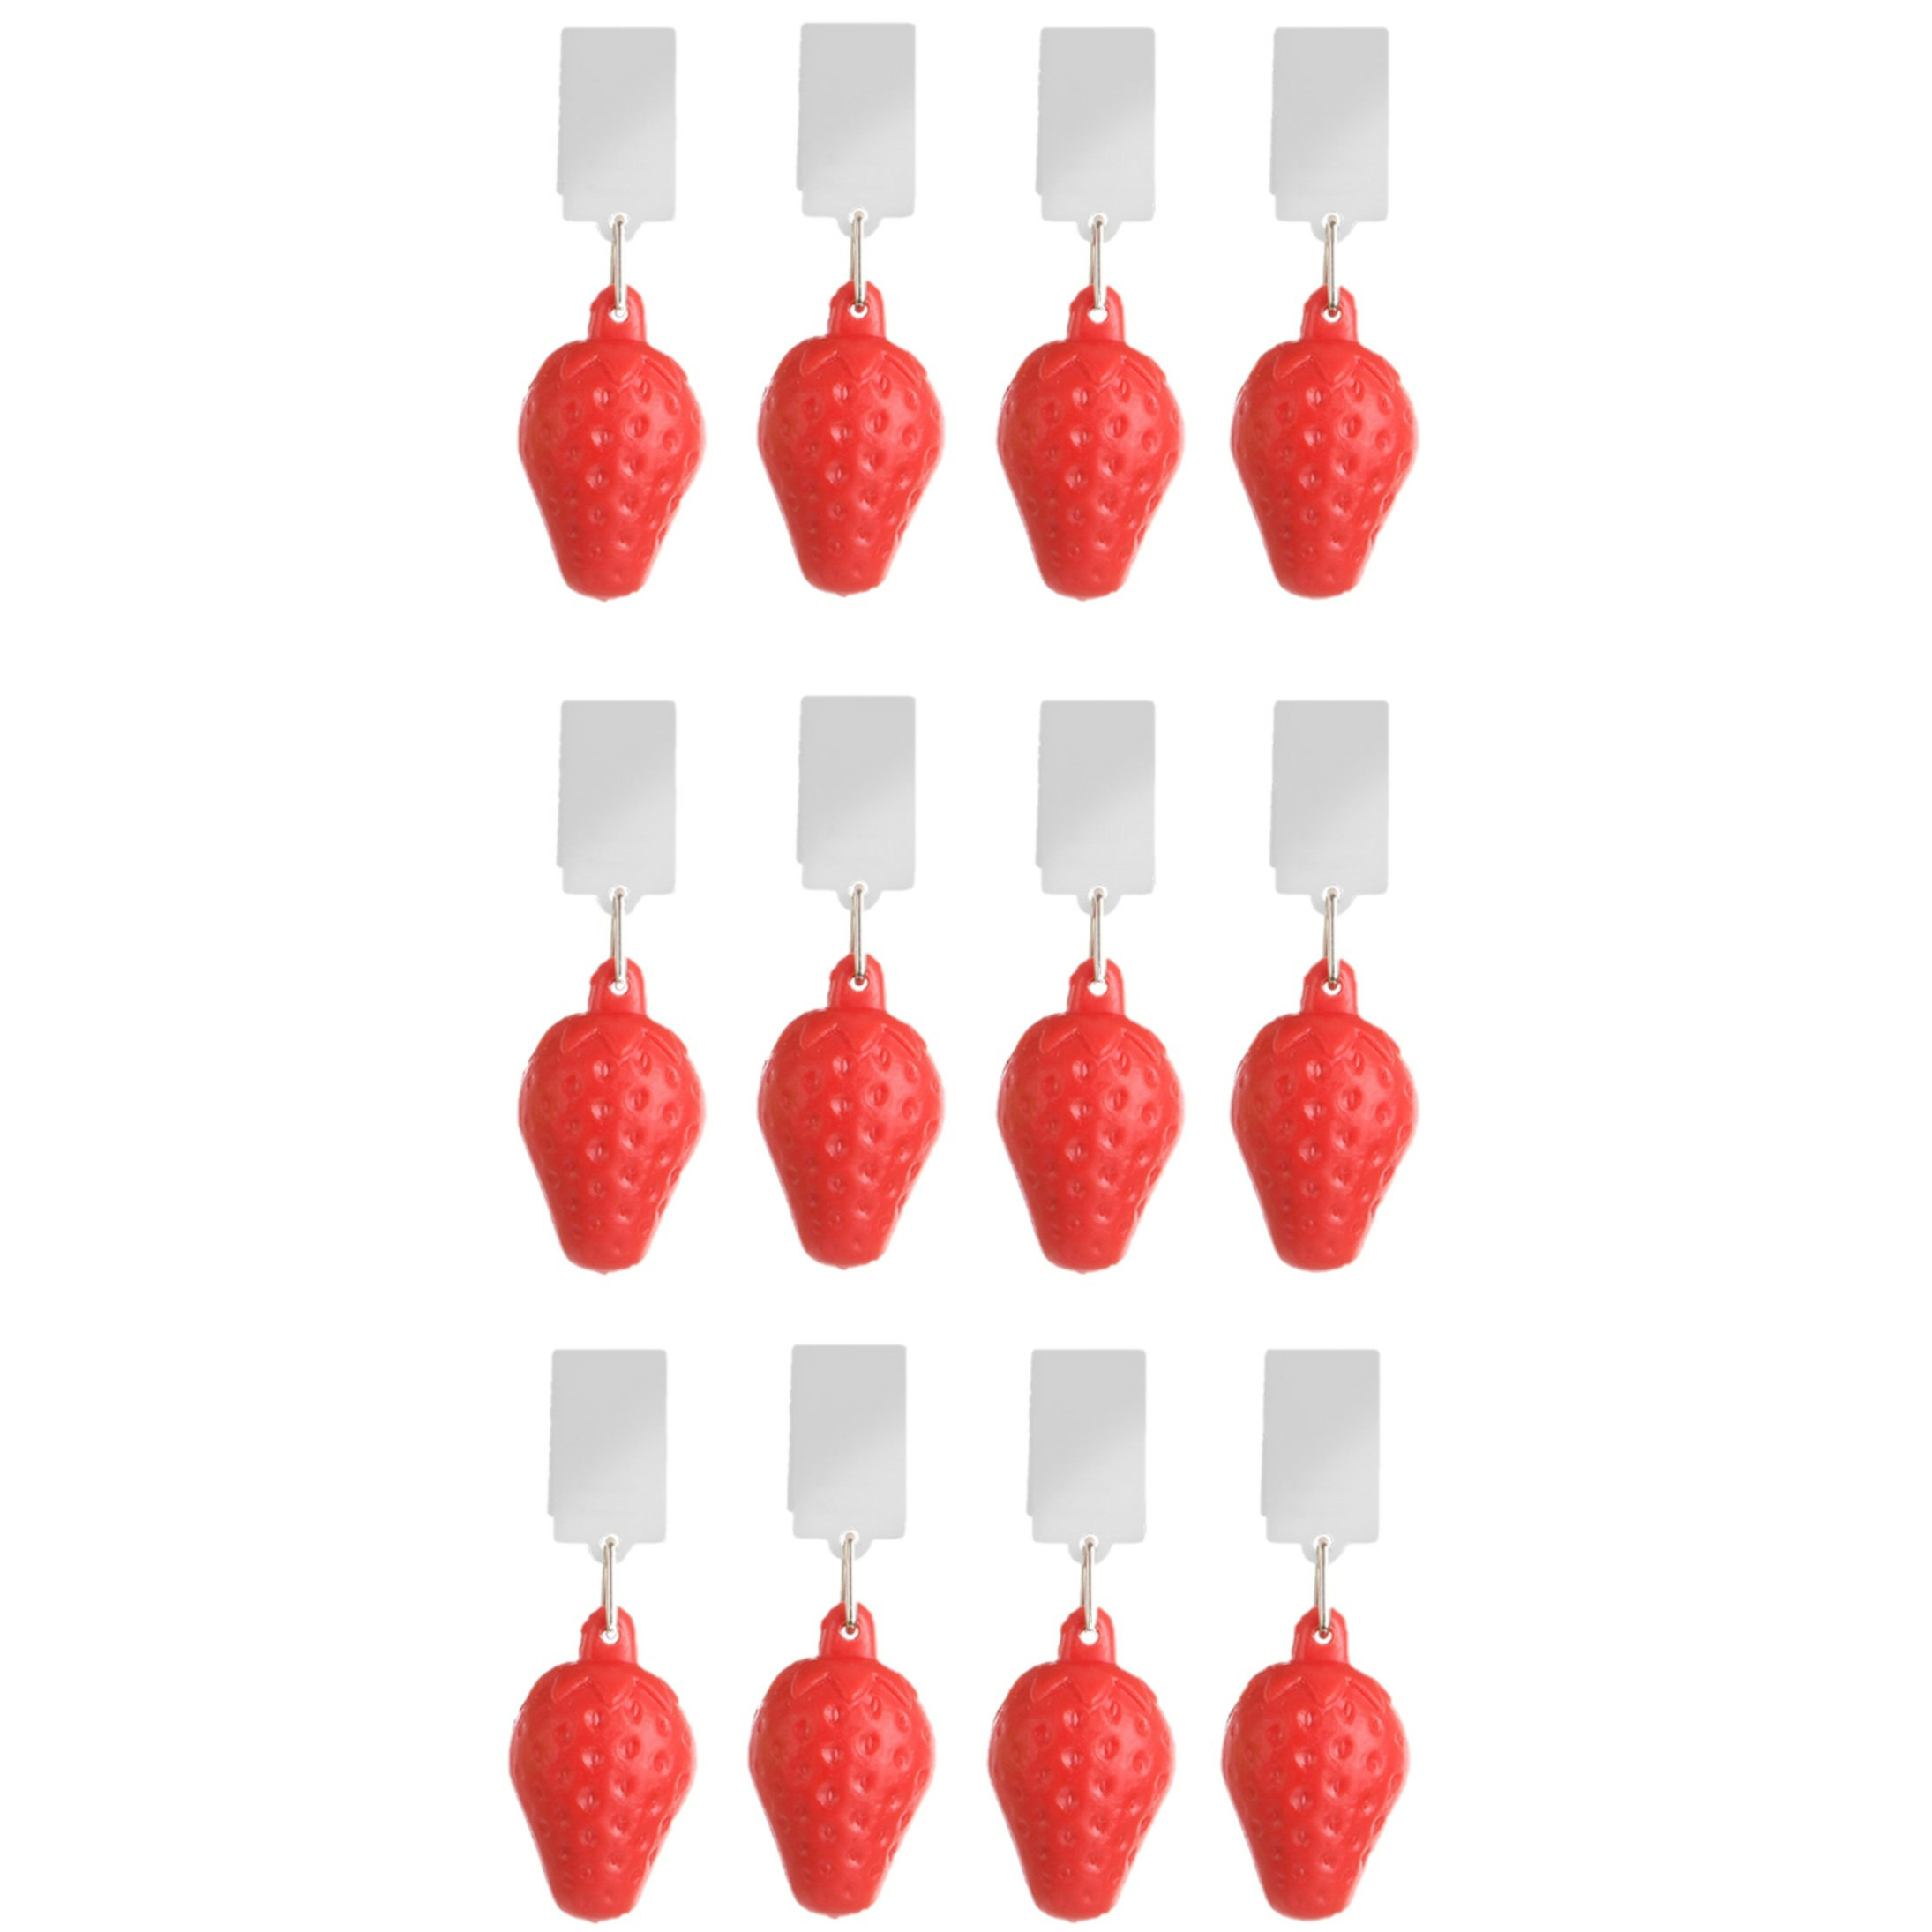 Tafelkleedgewichten aardbeien - 12x - rood - kunststof - voor tafelkleden en tafelzeilen -